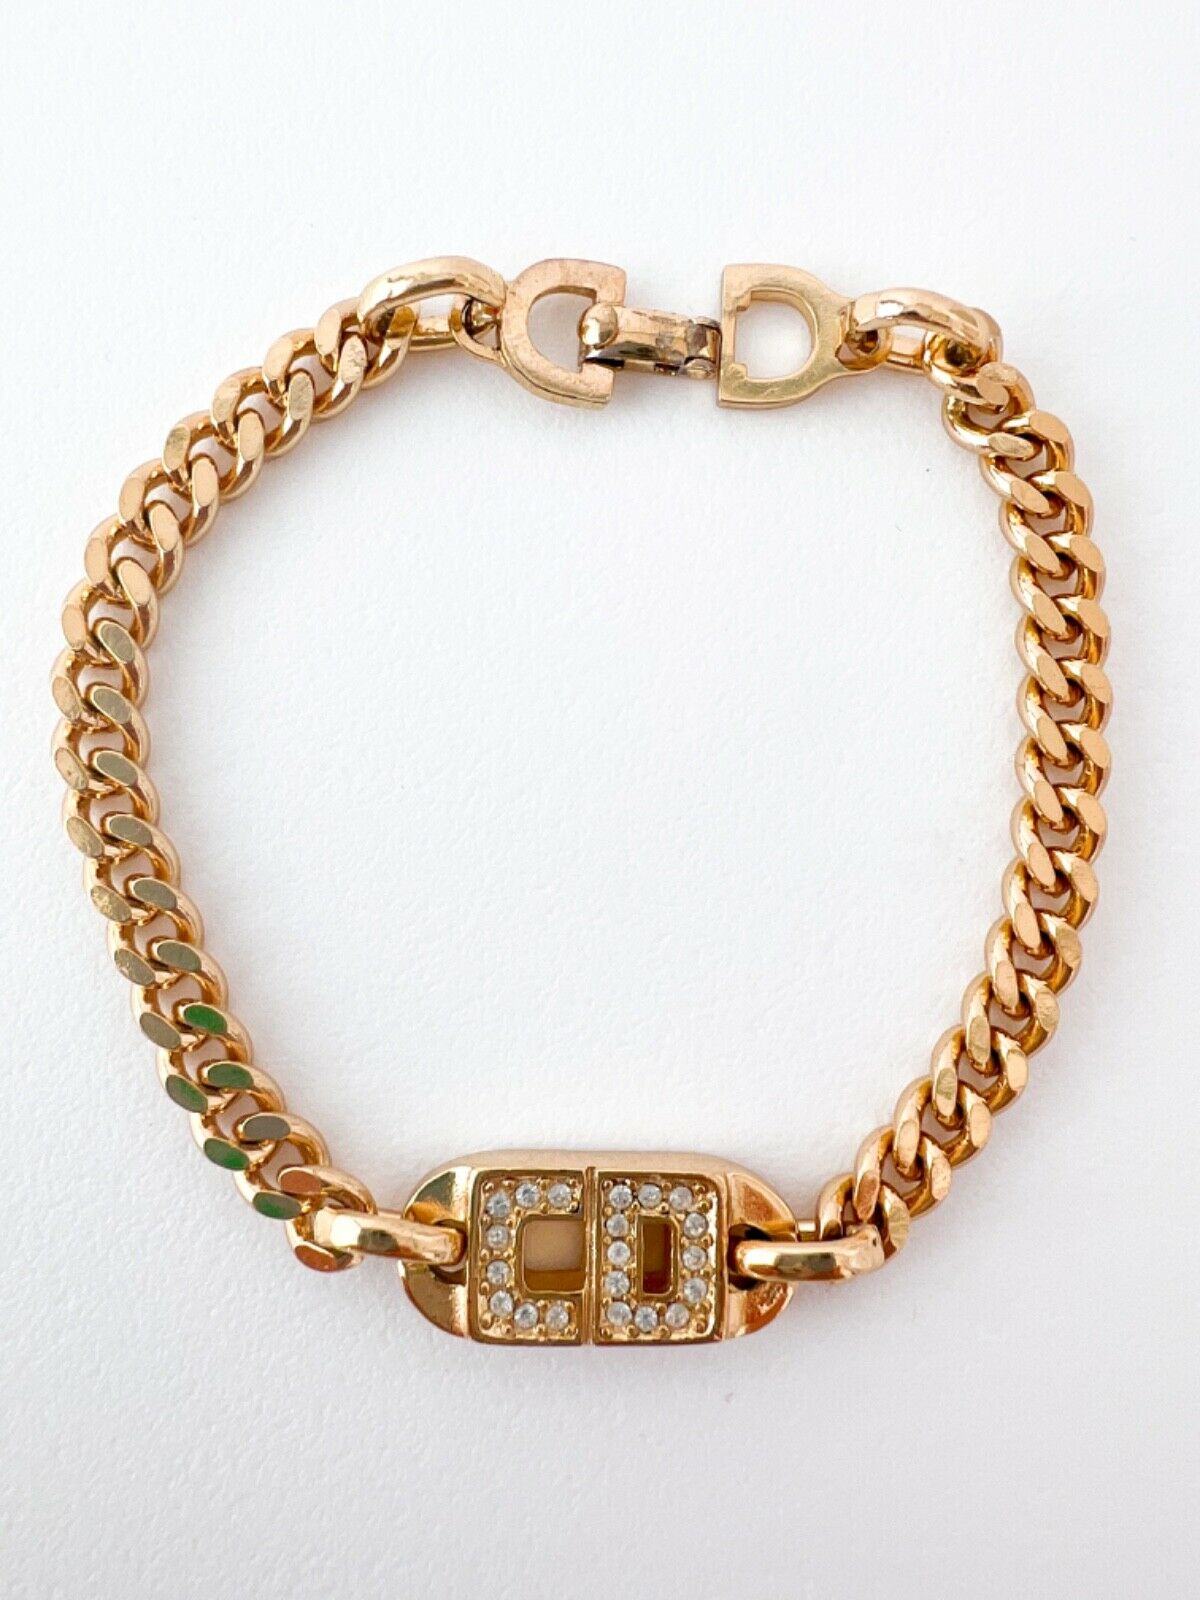 Christian Dior Logo bracelet vintage 